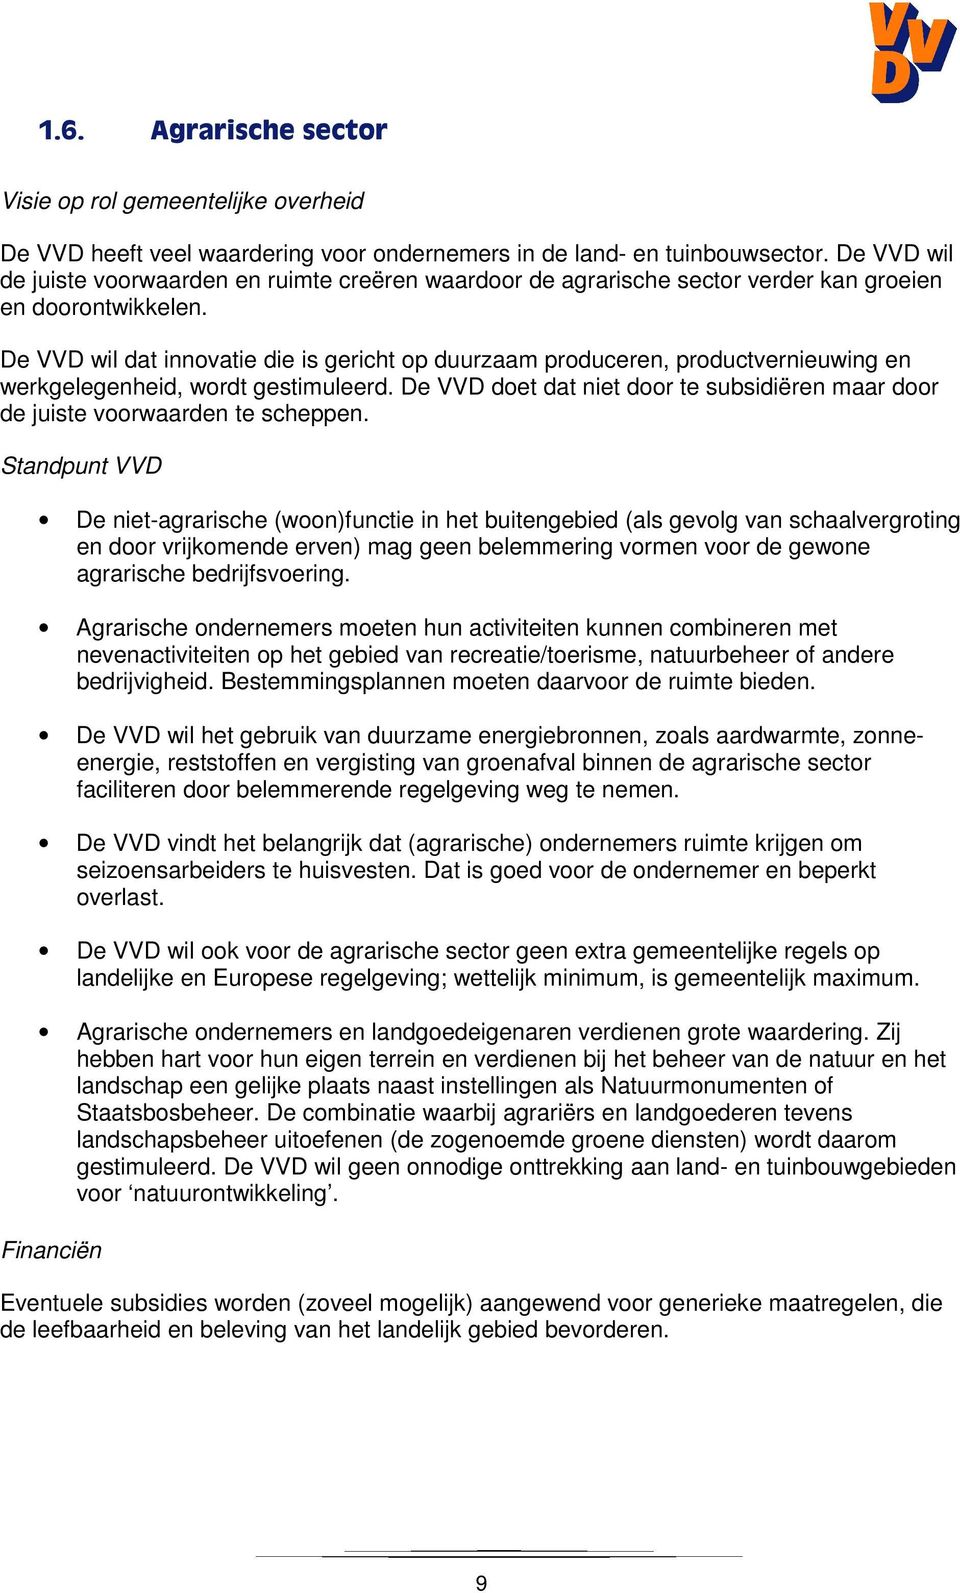 De VVD wil dat innovatie die is gericht op duurzaam produceren, productvernieuwing en werkgelegenheid, wordt gestimuleerd.